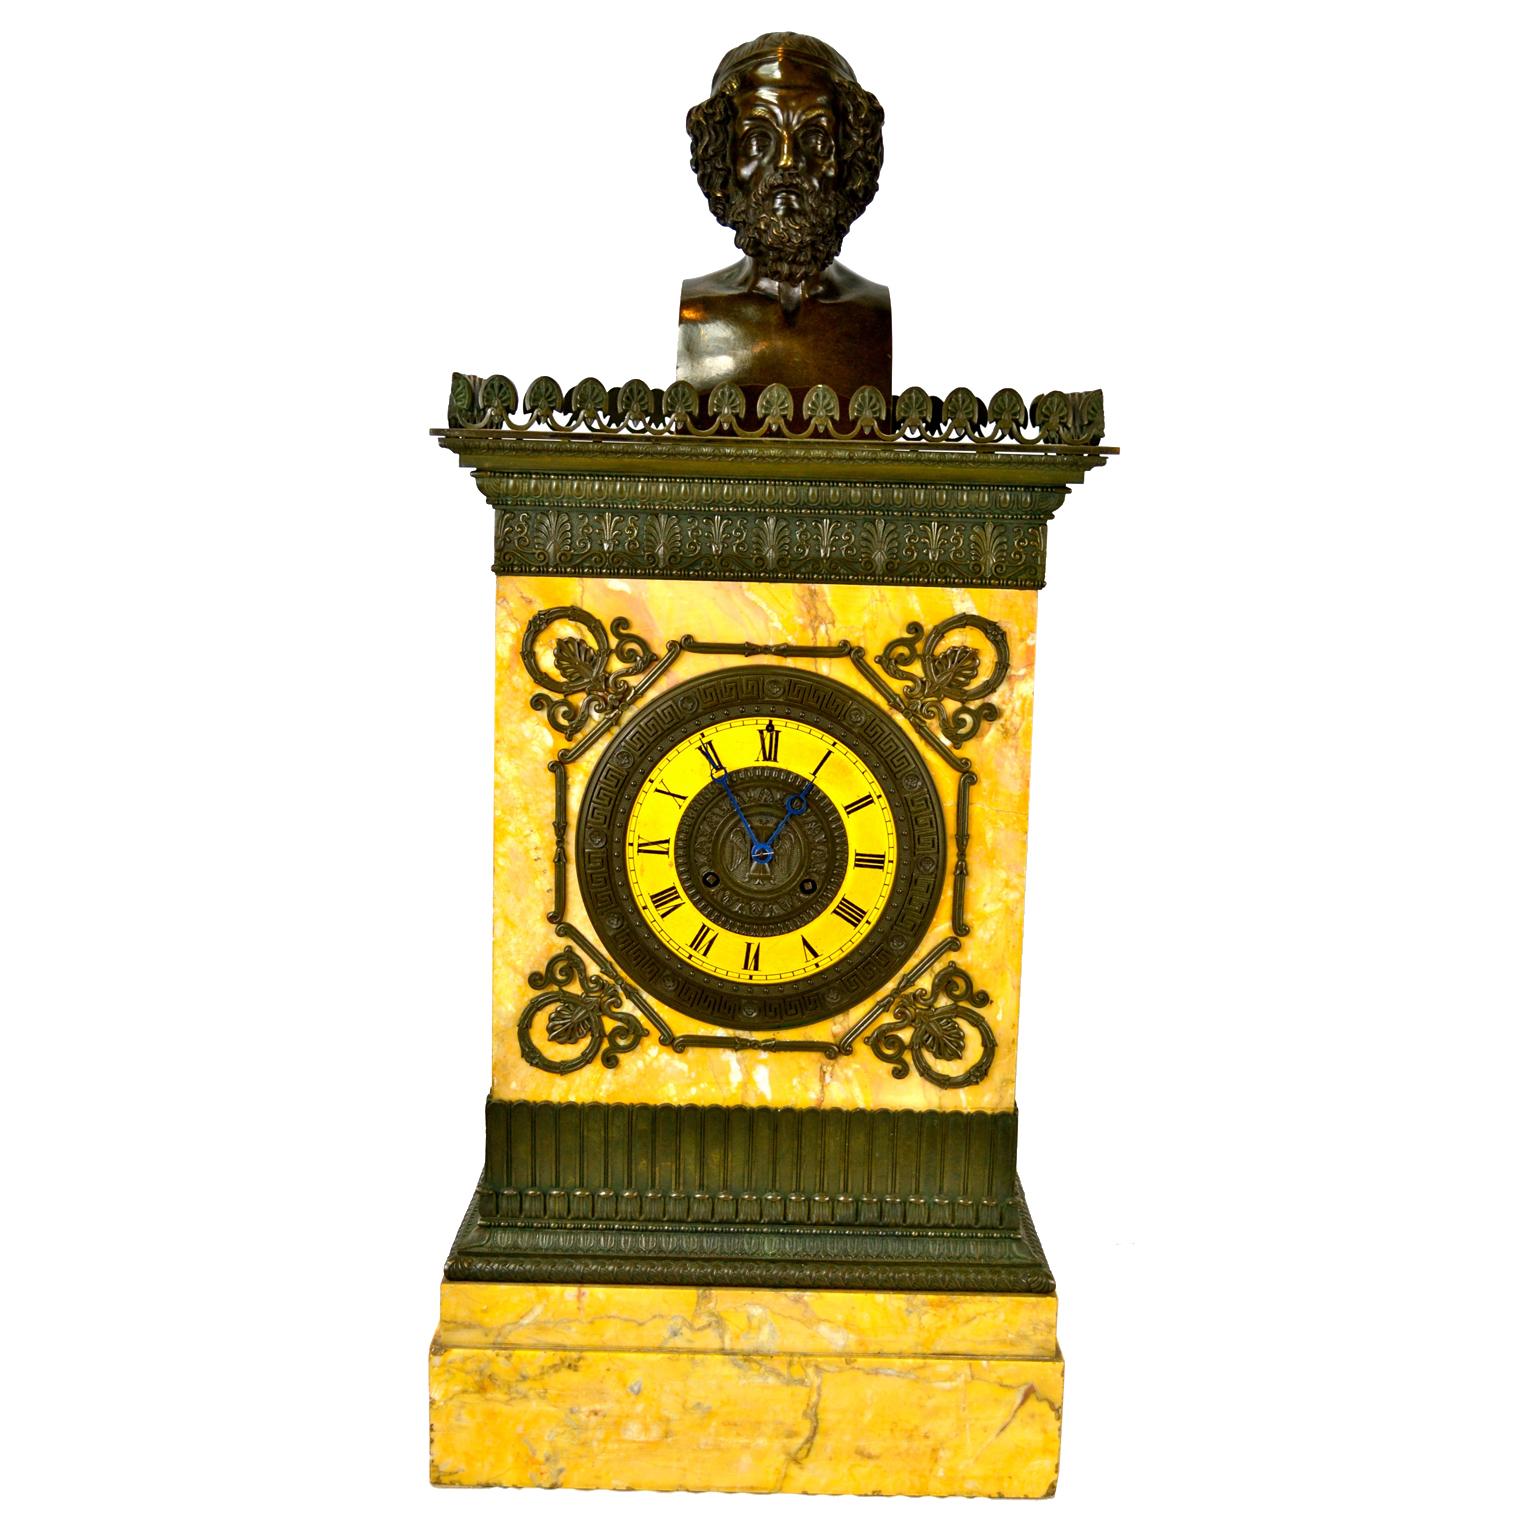 Une grande horloge Charles X en marbre de Sienne et bronze patiné et un candélabre assorti. Le coffret de style architectural en marbre de Sienne présente une galerie en bronze patiné et une moulure inférieure stylisée en bronze sur la base